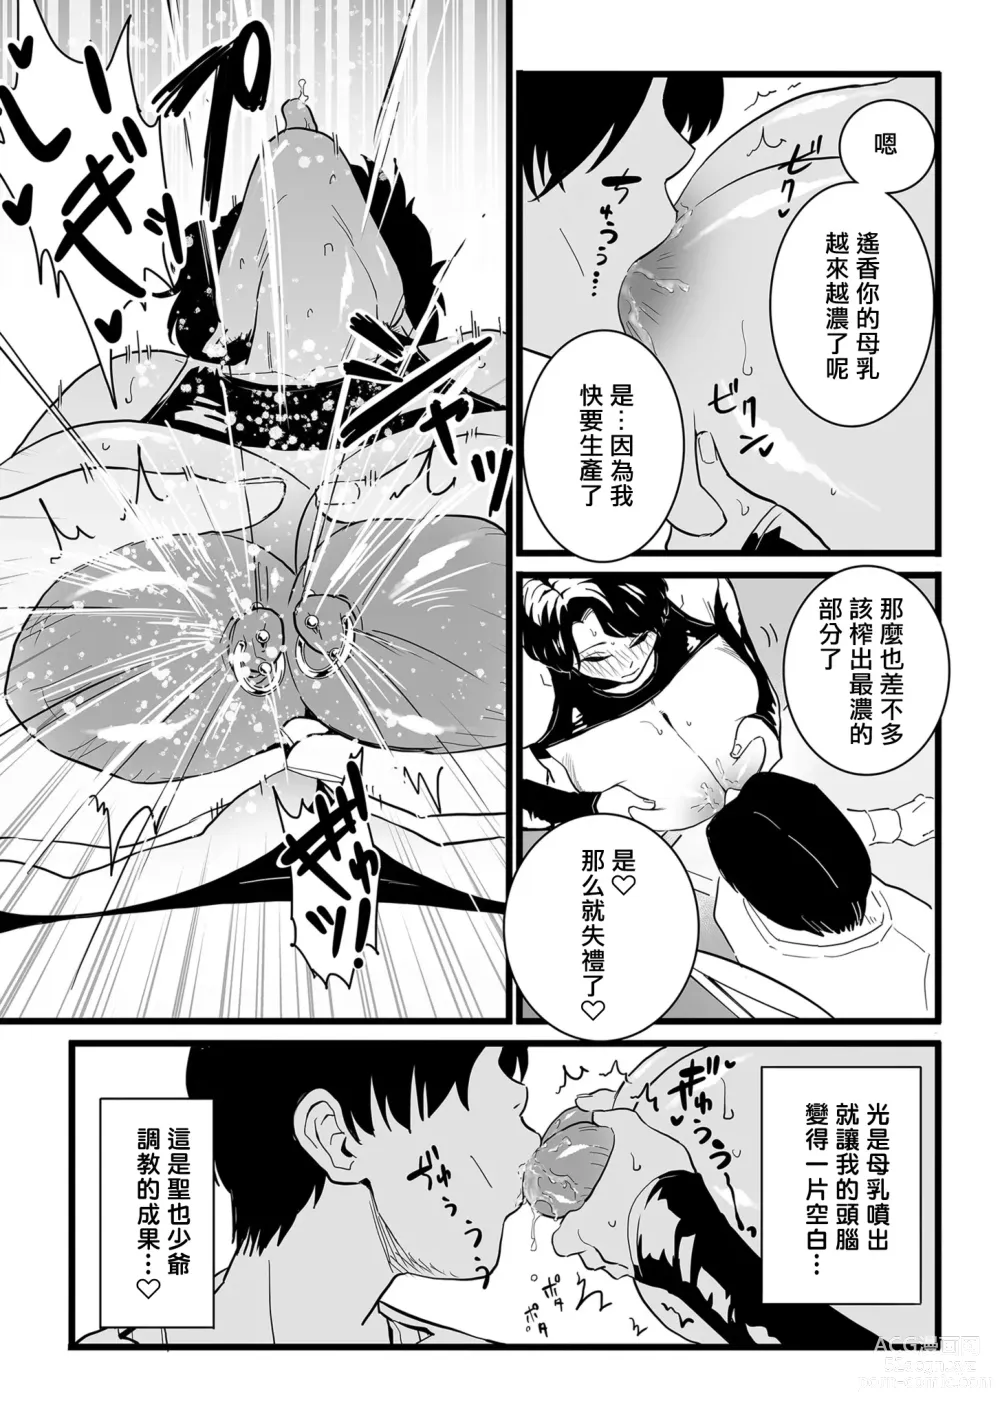 Page 4 of manga Mesu Dorei Sengen denshi tokusou ban egaki oroshi manga